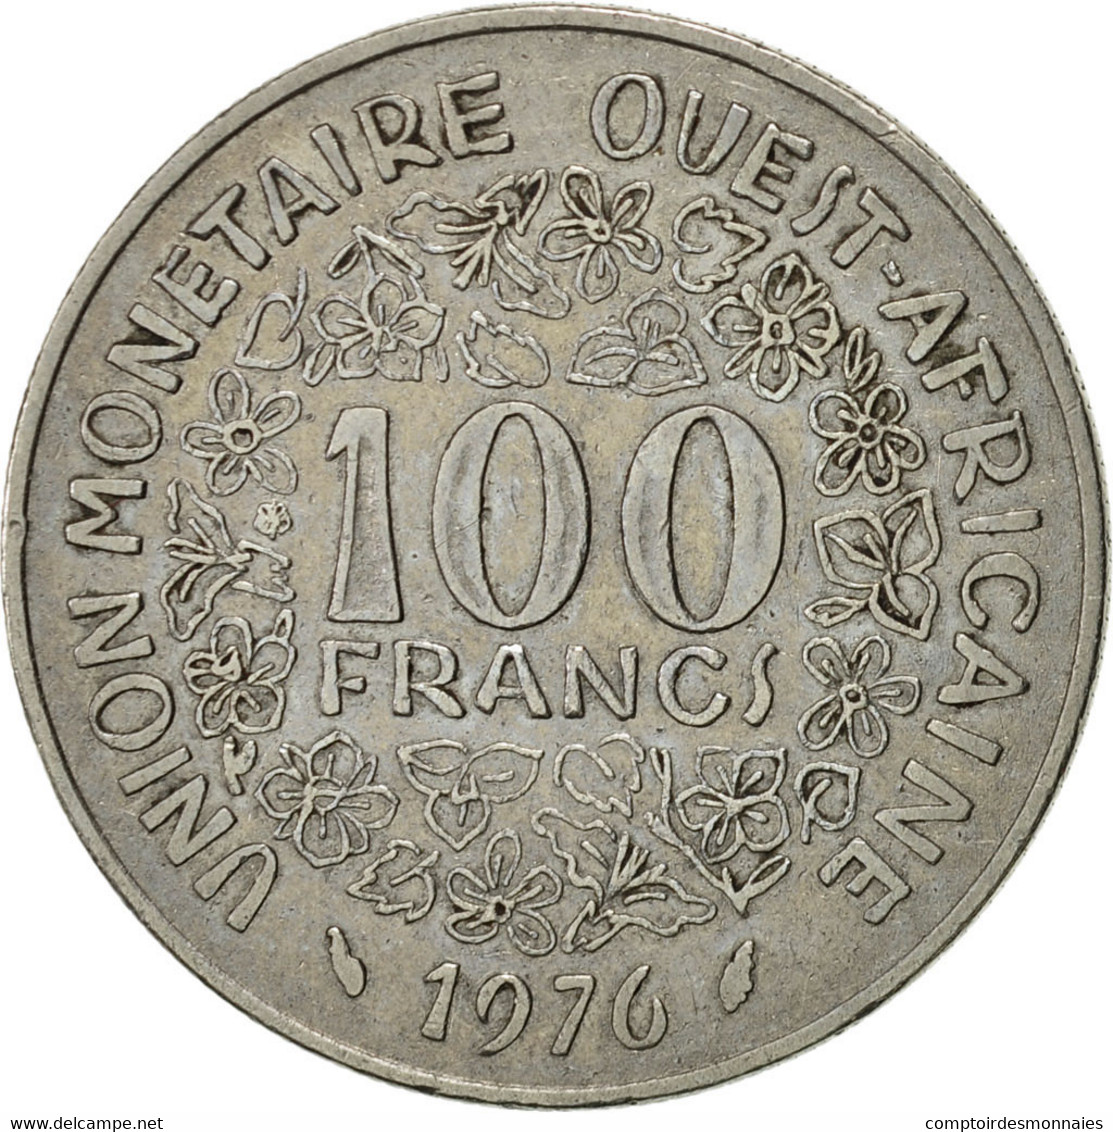 Monnaie, West African States, 100 Francs, 1976, Paris, TTB+, Nickel, KM:4 - Côte-d'Ivoire